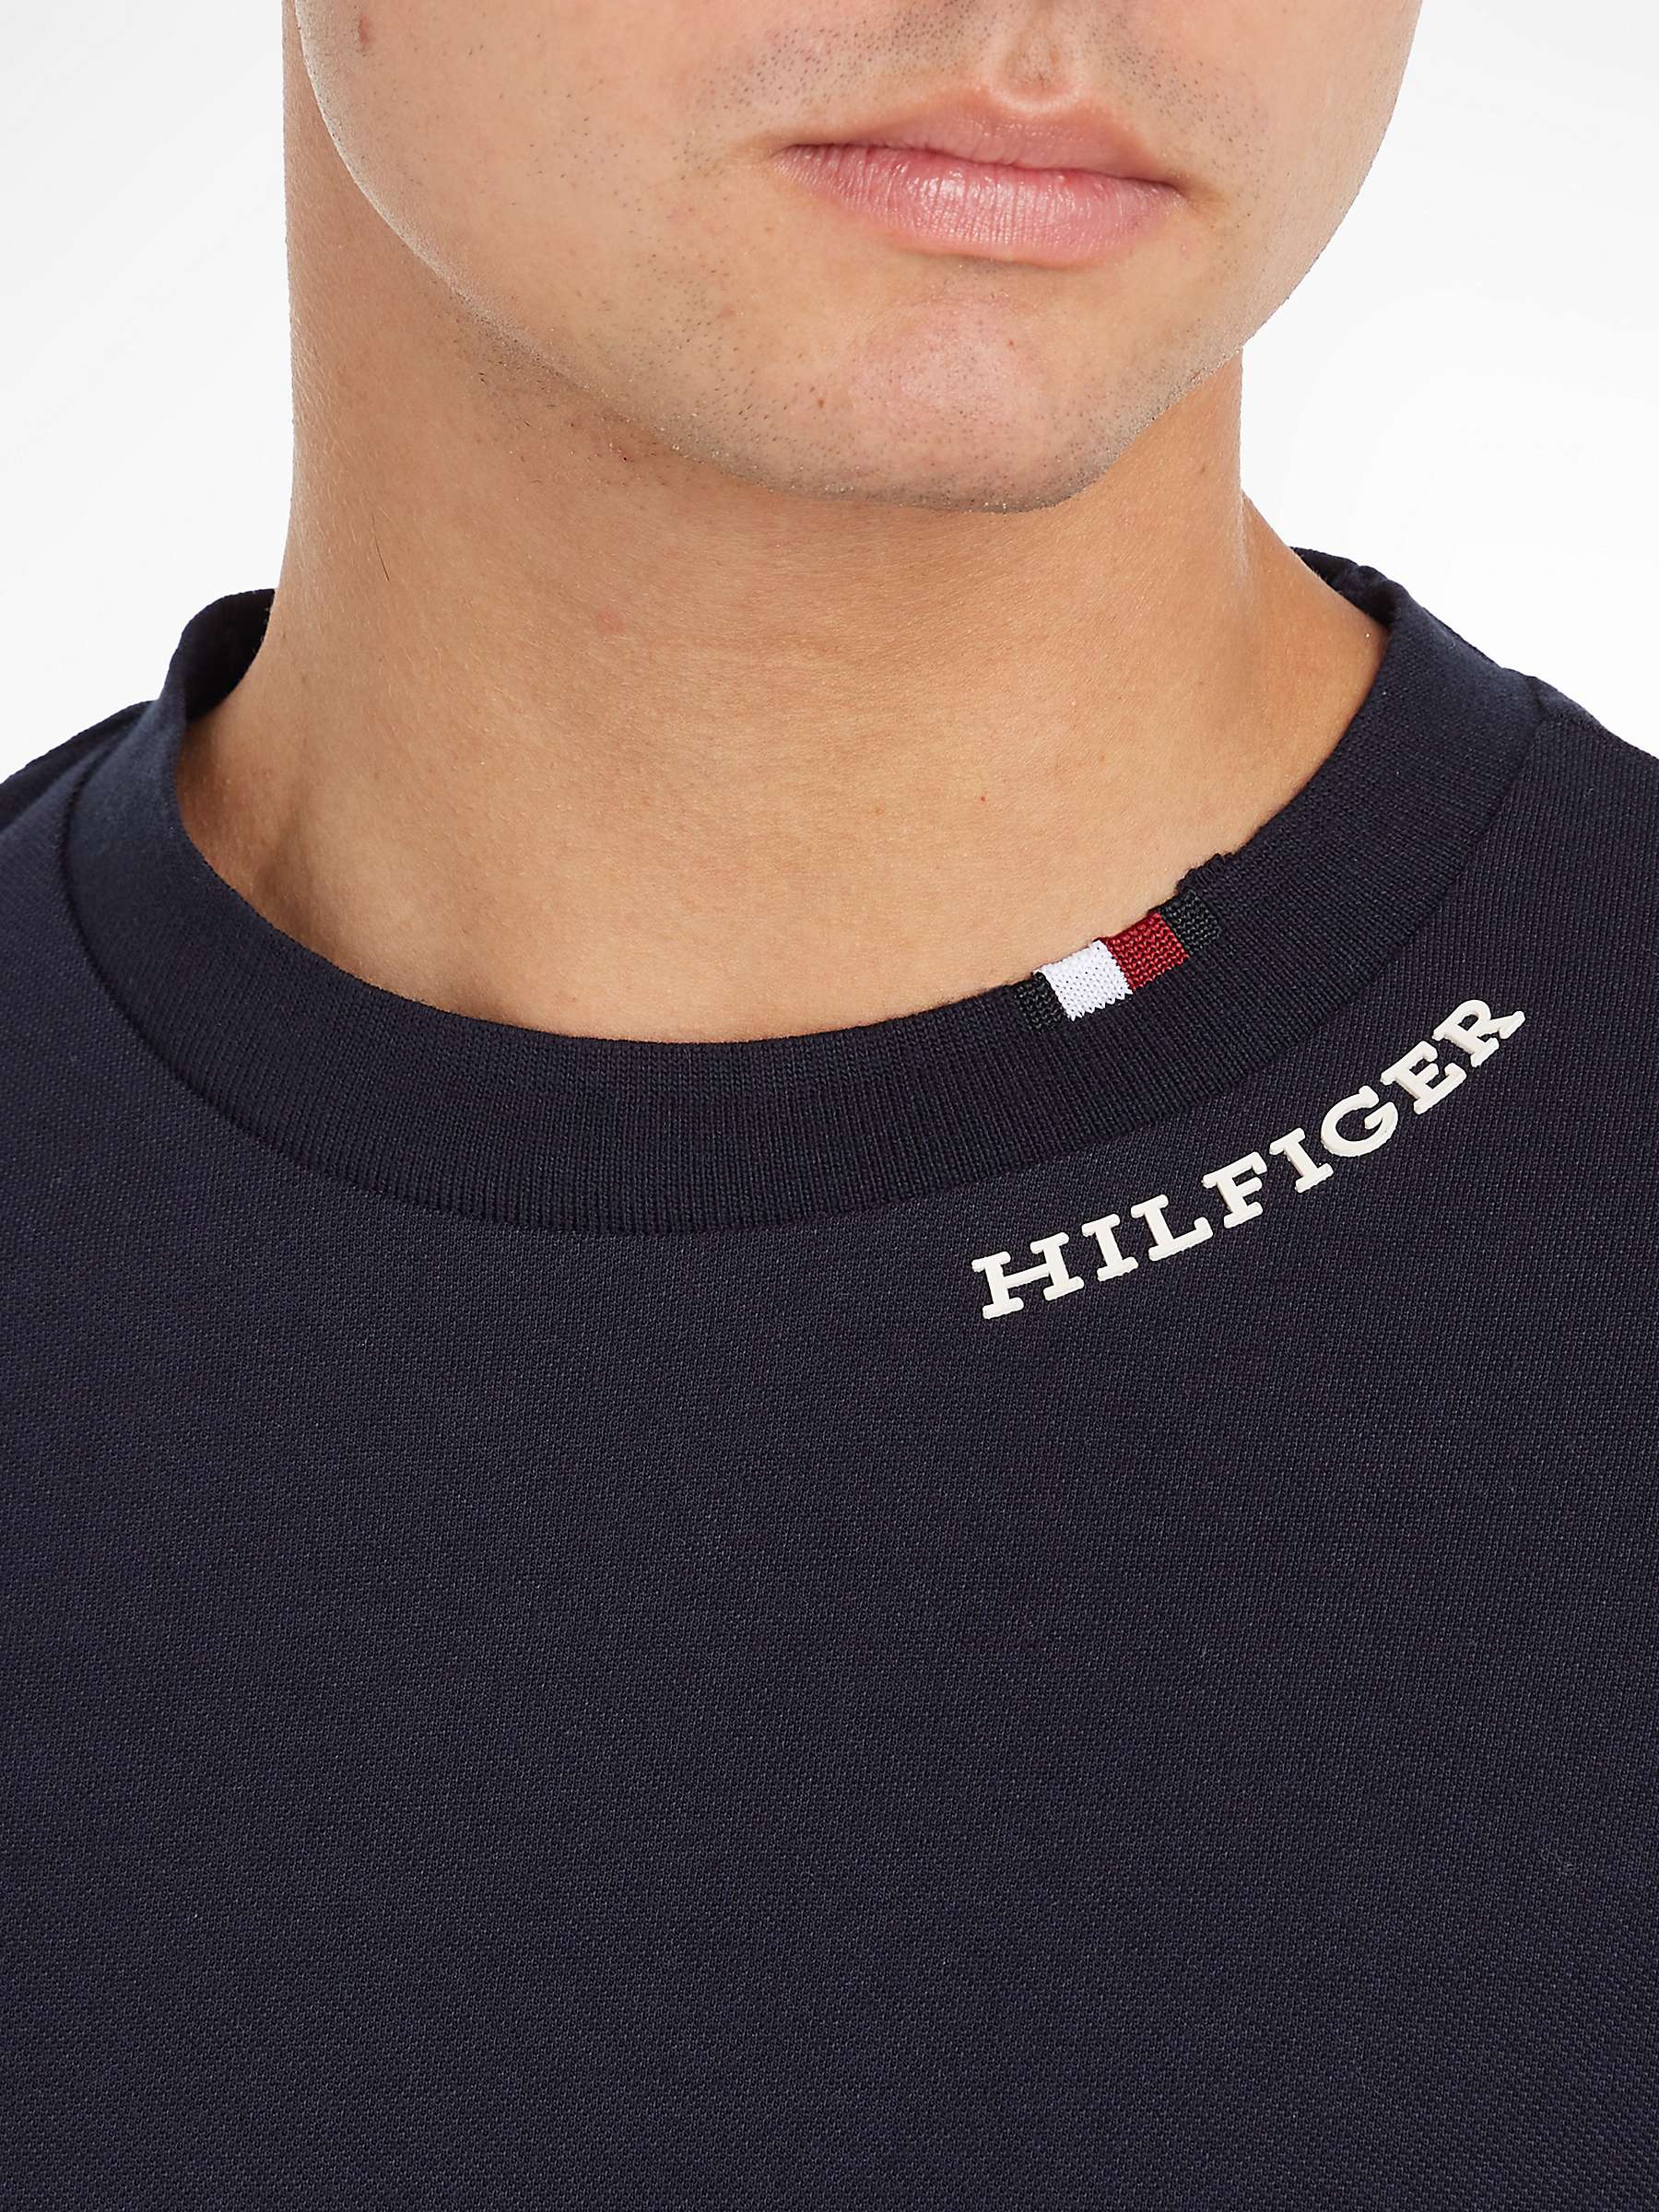 Buy Tommy Hilfiger Pique T-Shirt Online at johnlewis.com